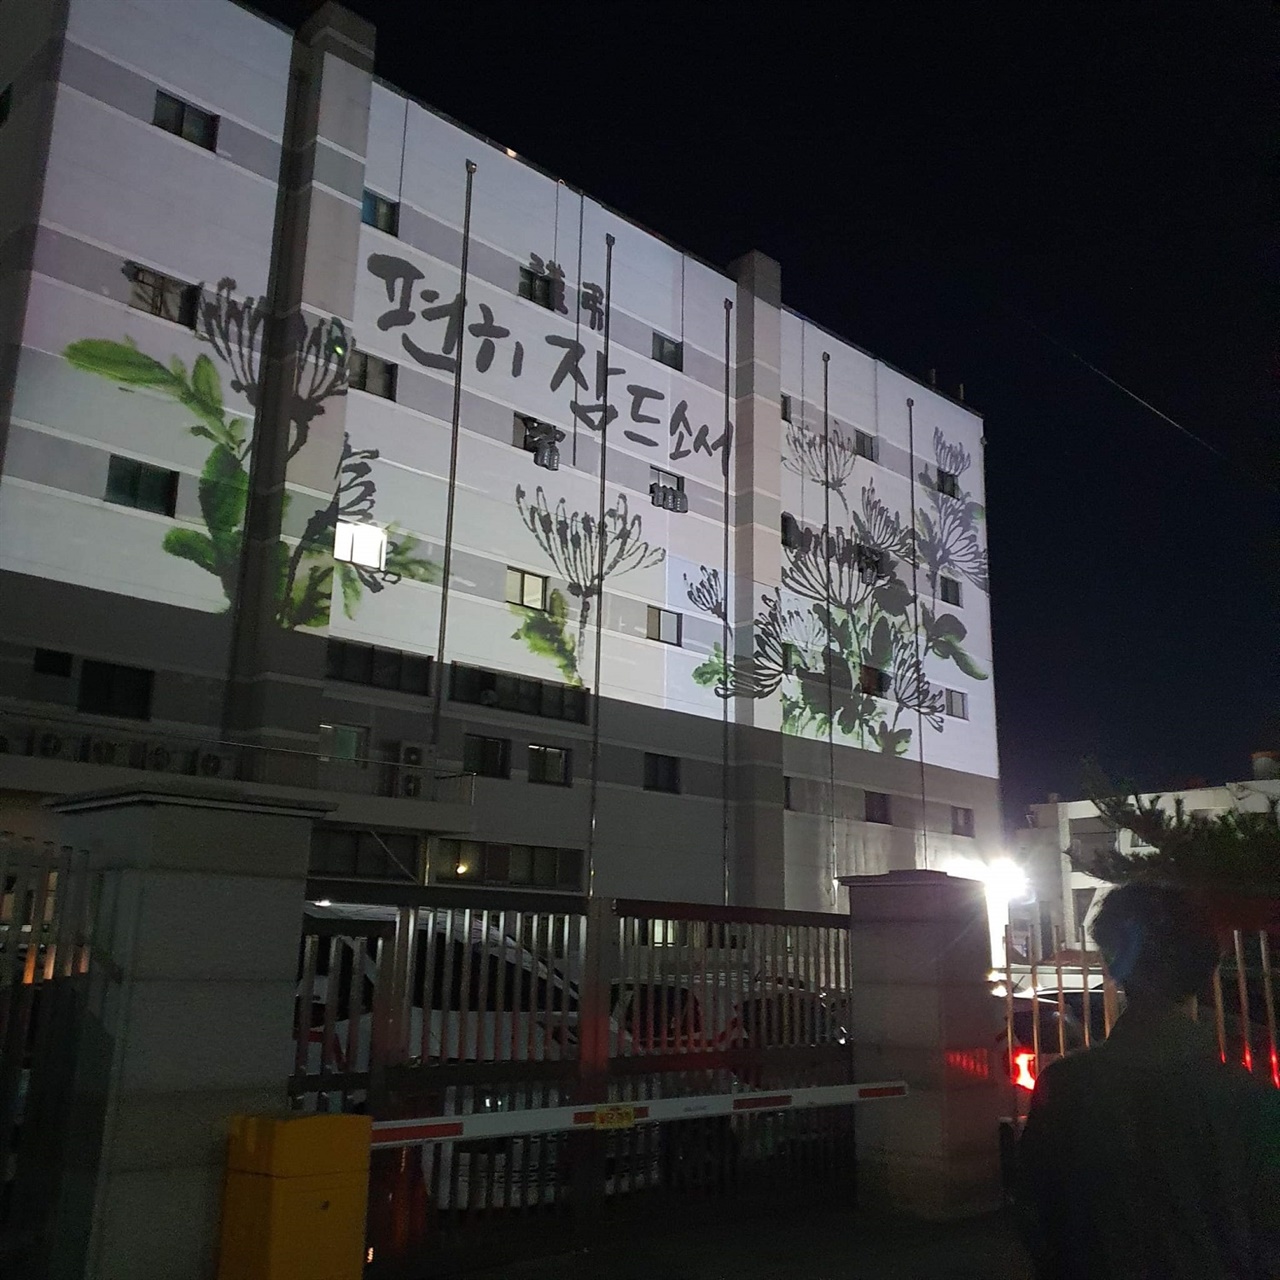 홍성군에서는 지난 2일 밤, 홍주읍성에서 맞은 편 건물 외벽에 미디어파사드 기술을 활용해 흰 국화와 함께 “PRAY", "편히 잠드소서”라는 추모글을 새겼다.